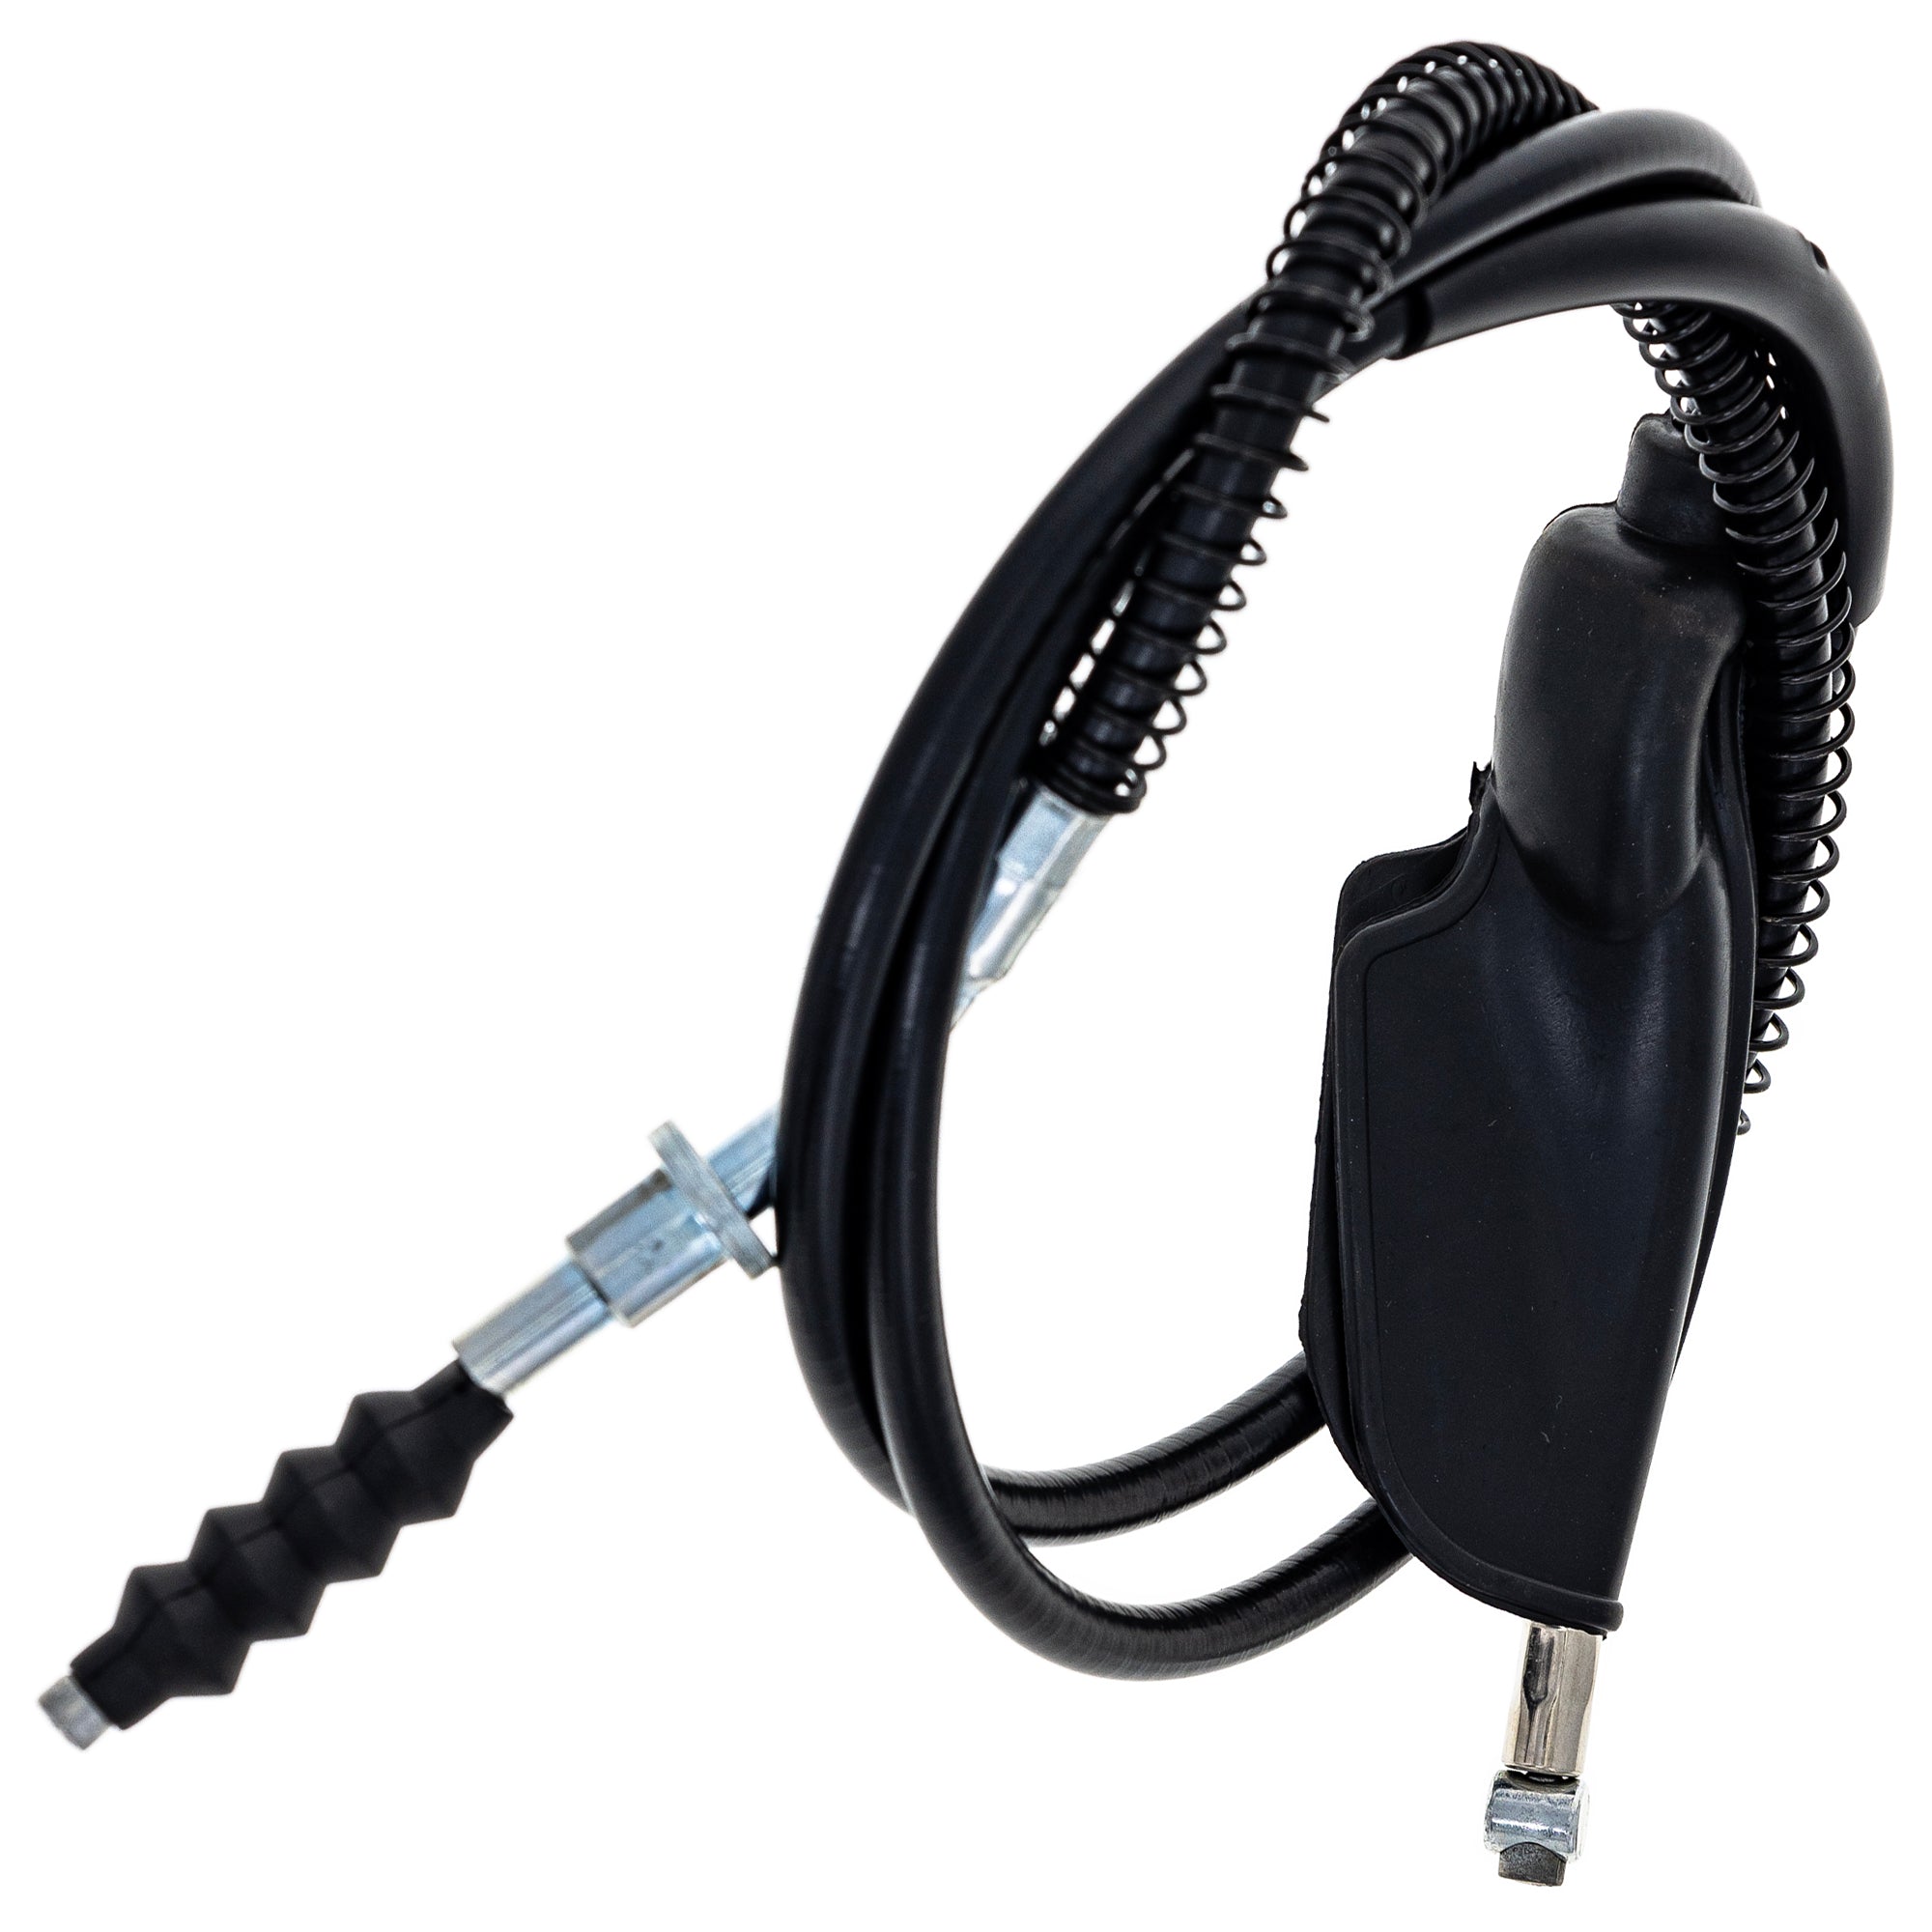 Clutch Cable for Yamaha YTZ250 YZ250 YZ490 38W-26335 23X-26335